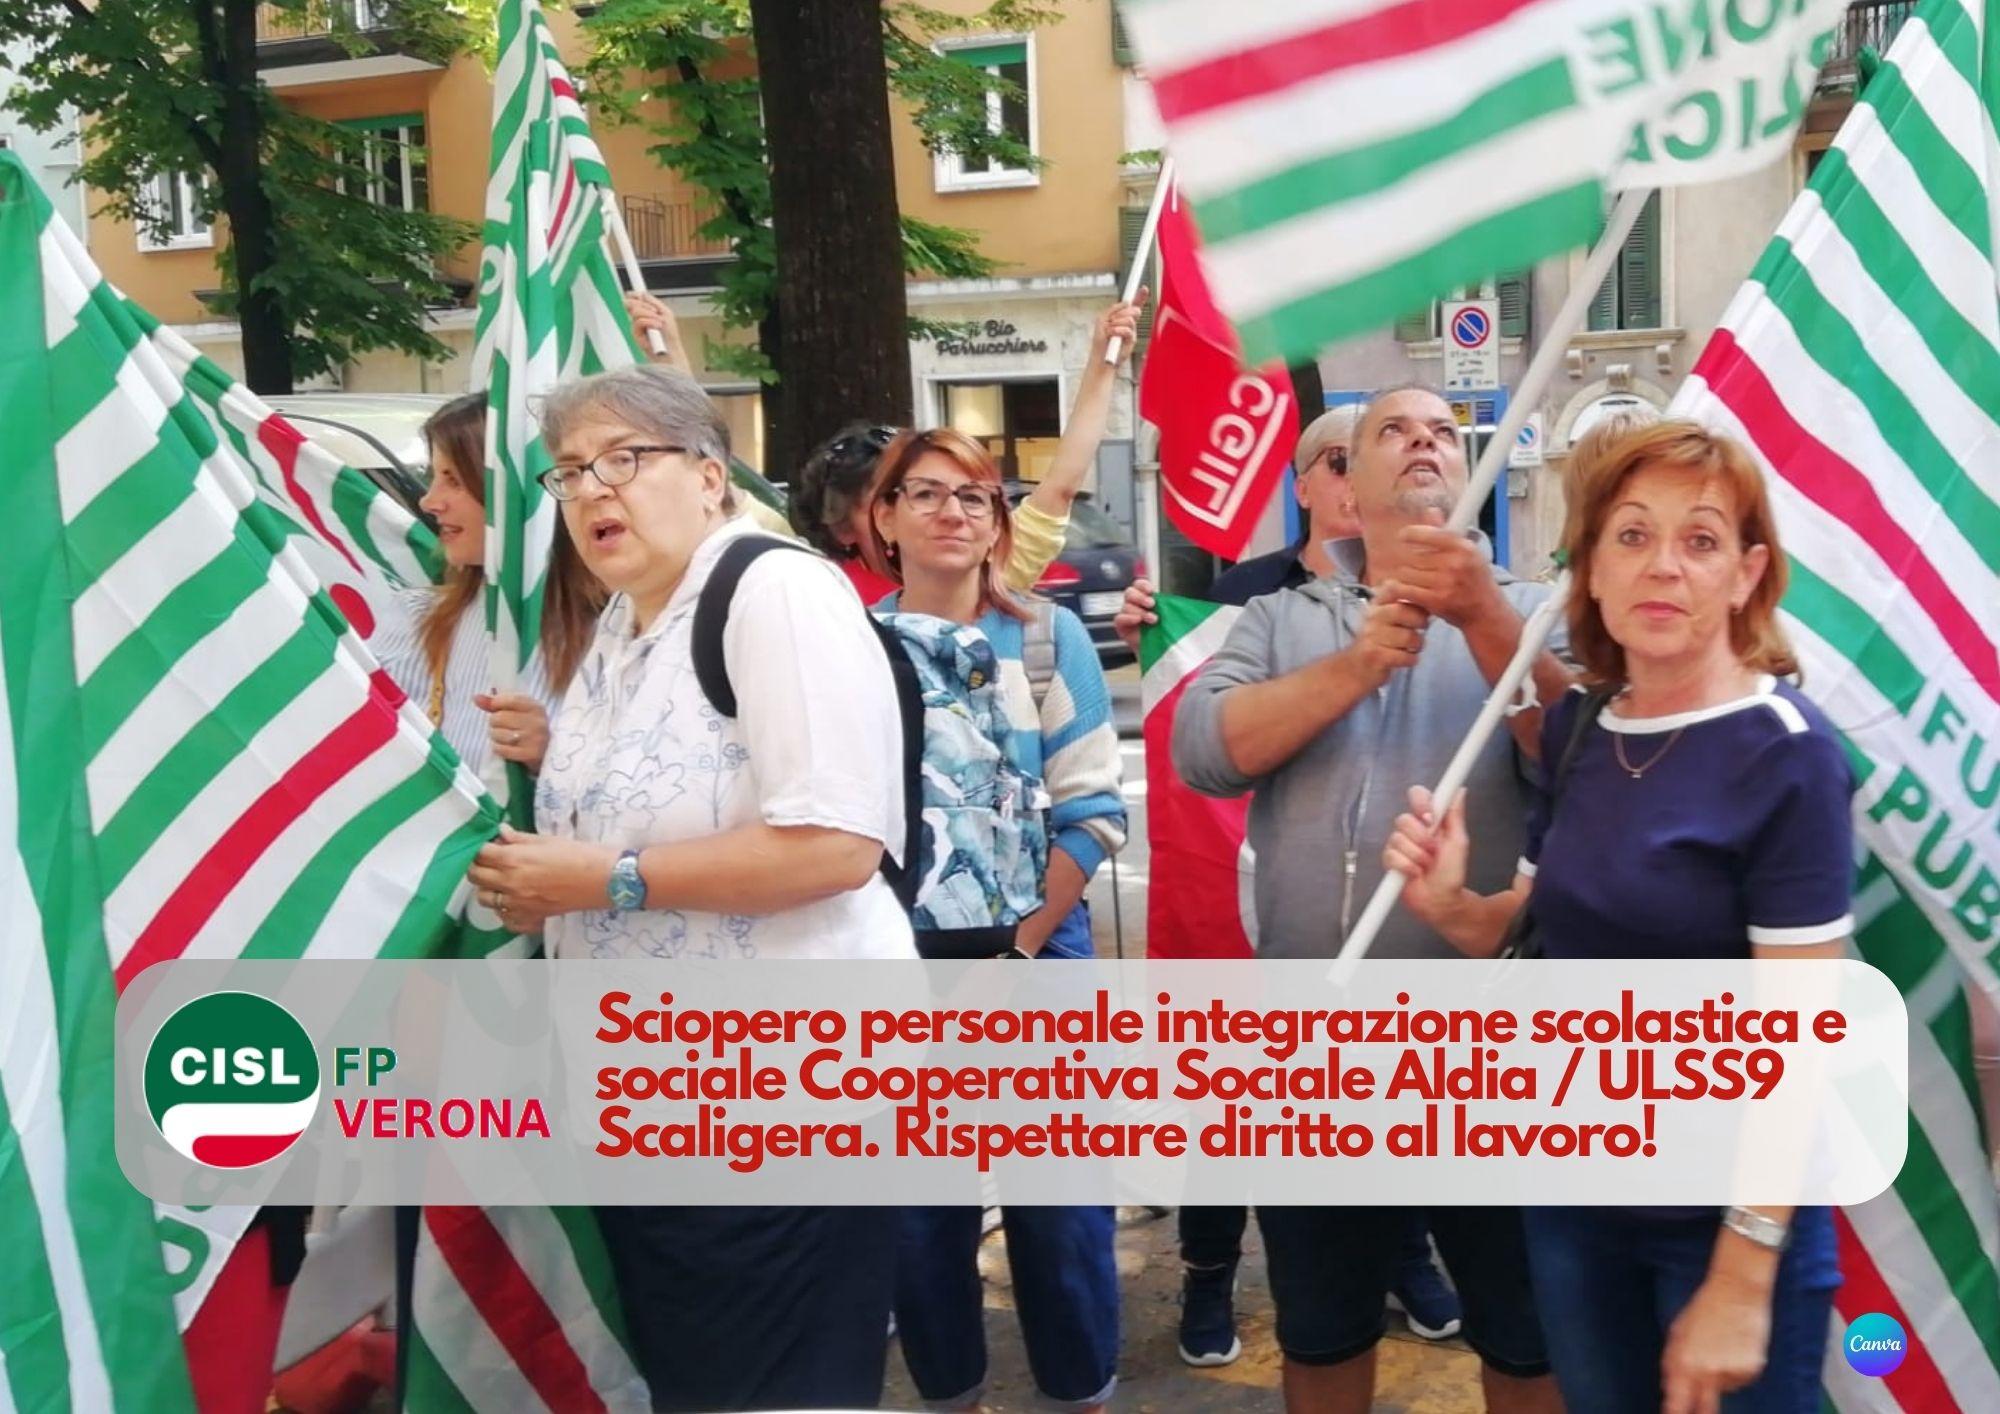 CISL FP Verona: Terzo Settore. Aldia cooperativa sociale. Lavoratrici e lavoratori in sciopero